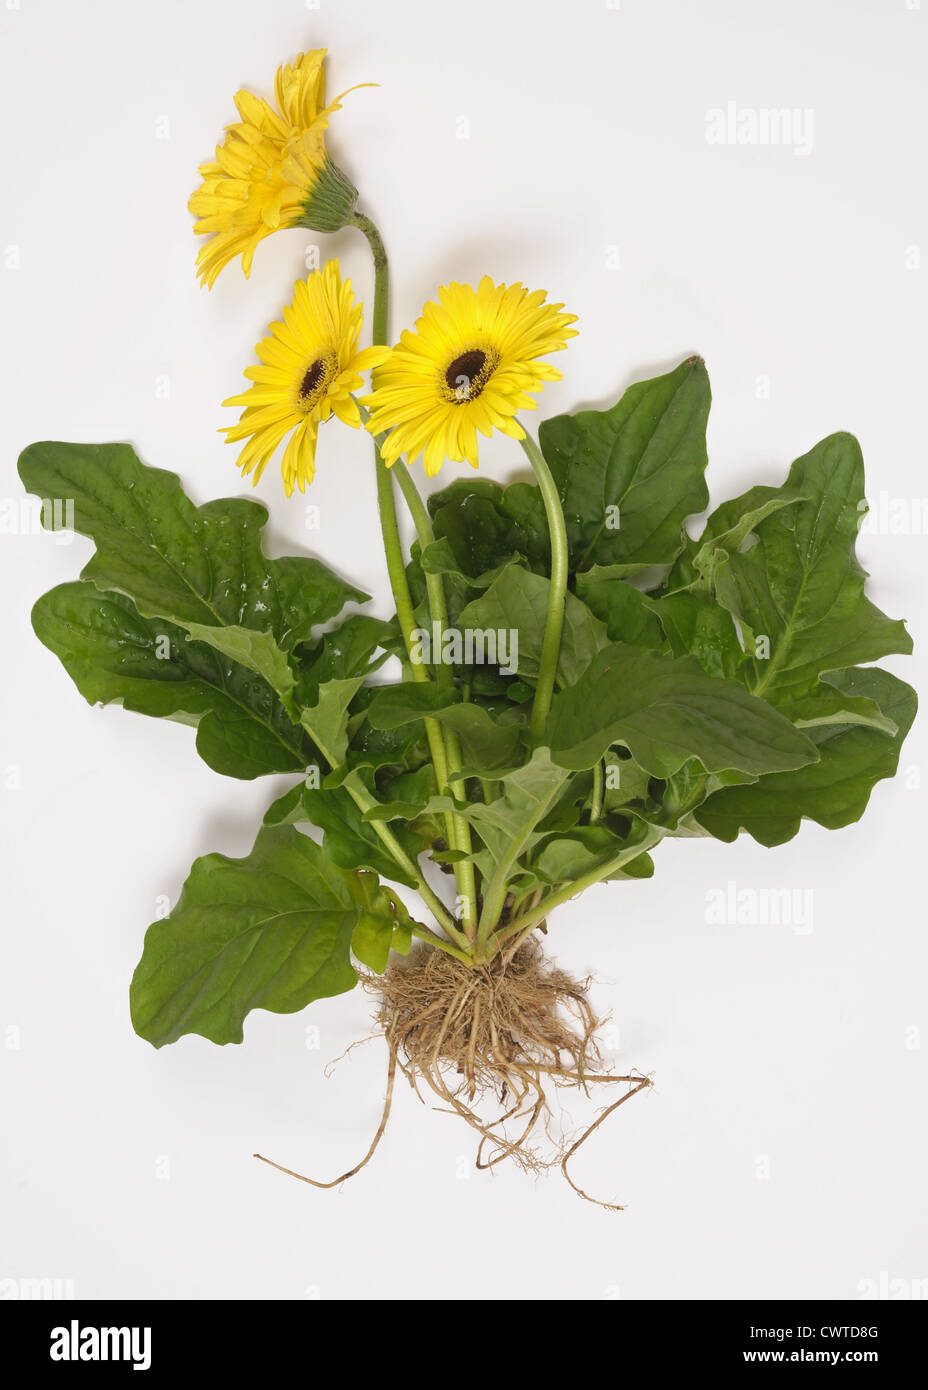 Gerbera pianta con i fiori gialli, foglie e le radici esposte alla mostra struttura vegetale Foto Stock